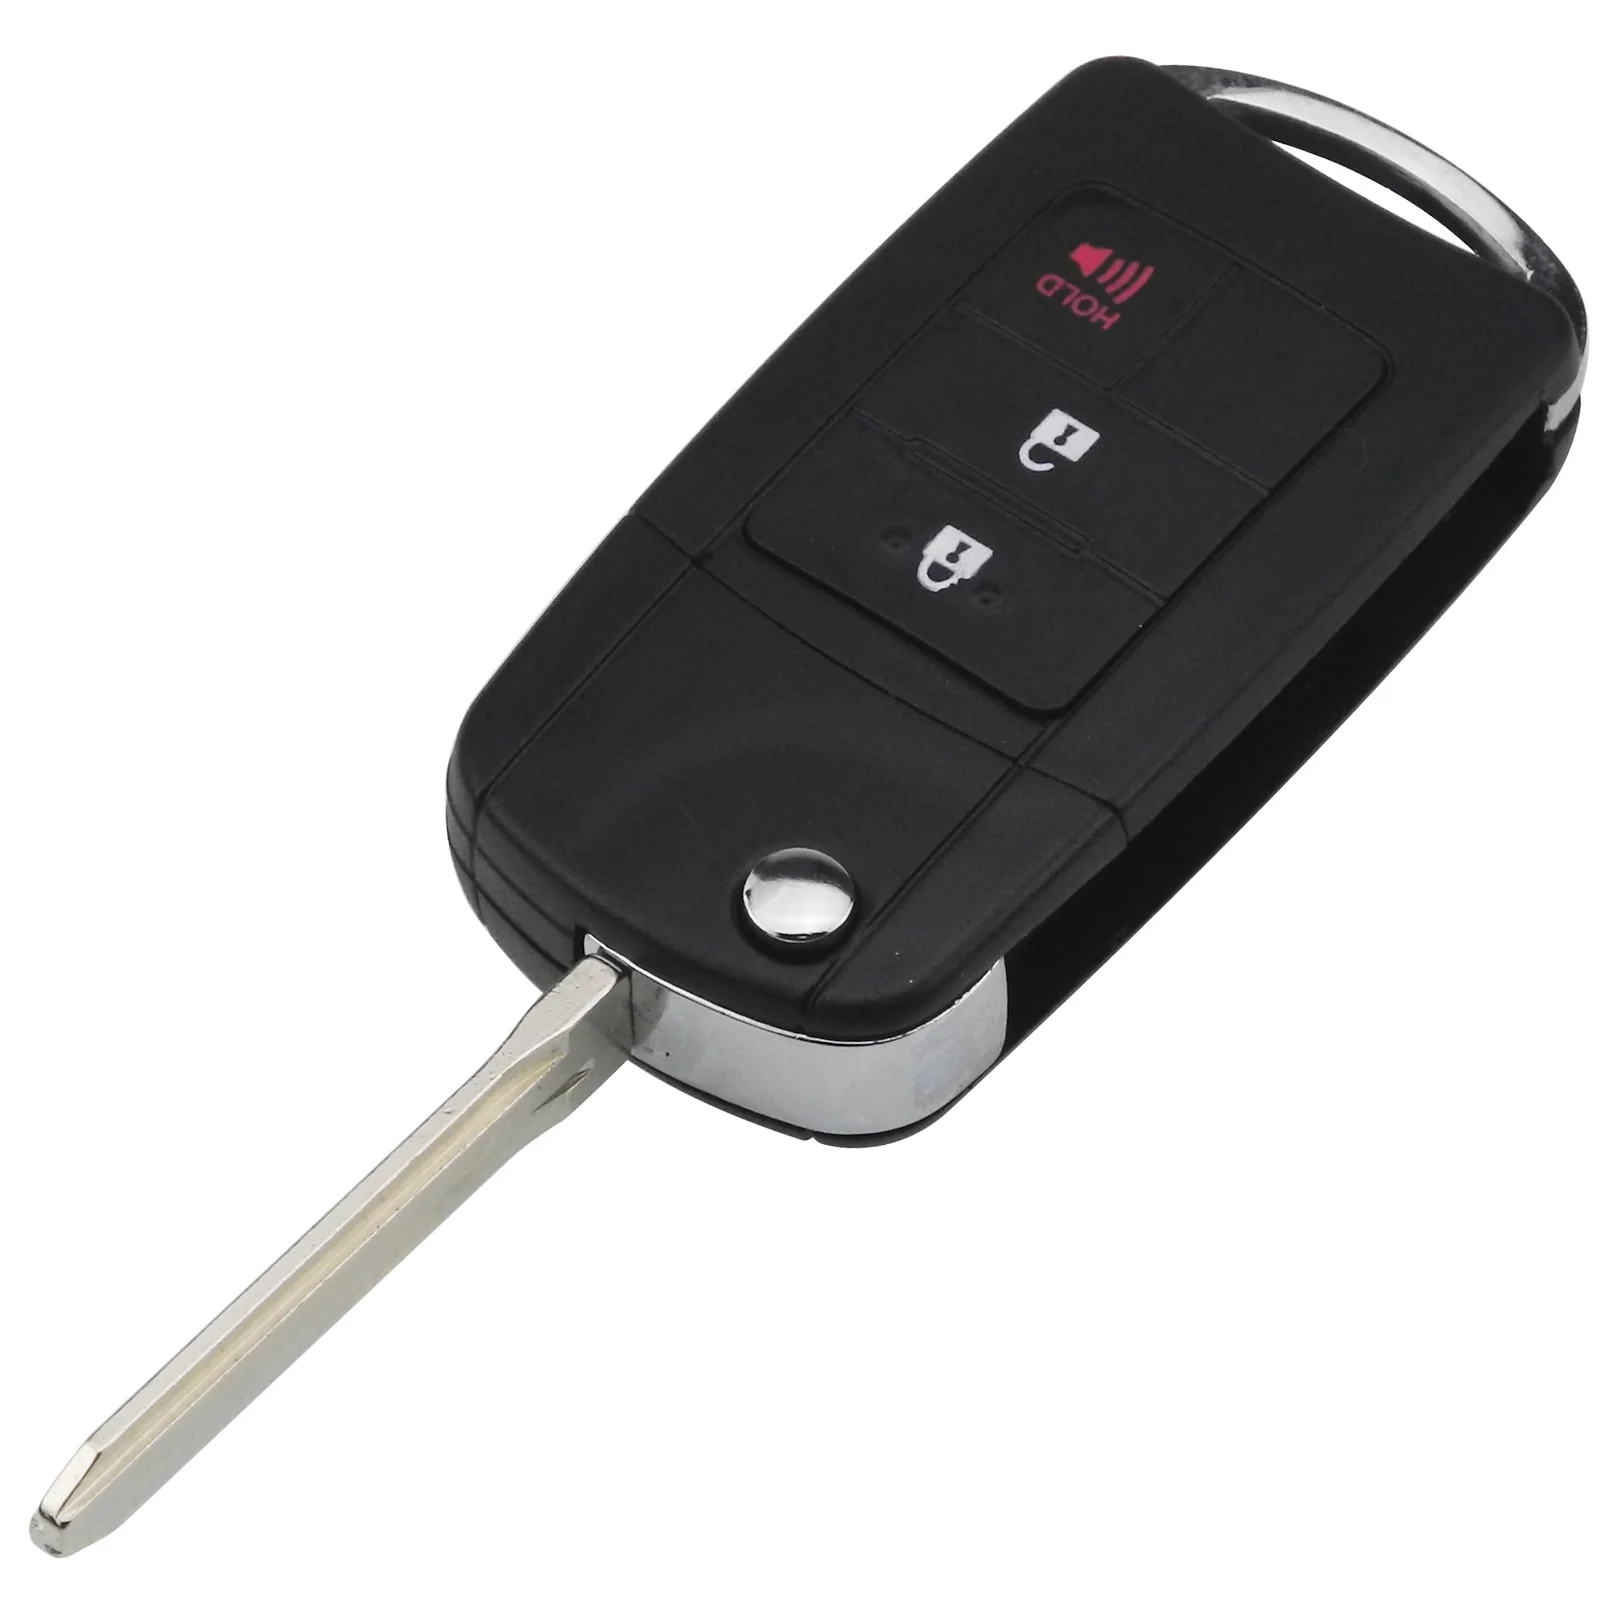 Jinyuqin модифицированный дистанционный ключ для автомобиля 2/3/4 пуговицы складной удаленное Управление ключ чехол для TOYOTA Reiz Corolla Camry TOYOTA Previa RAV - Количество кнопок: 2Button Panic